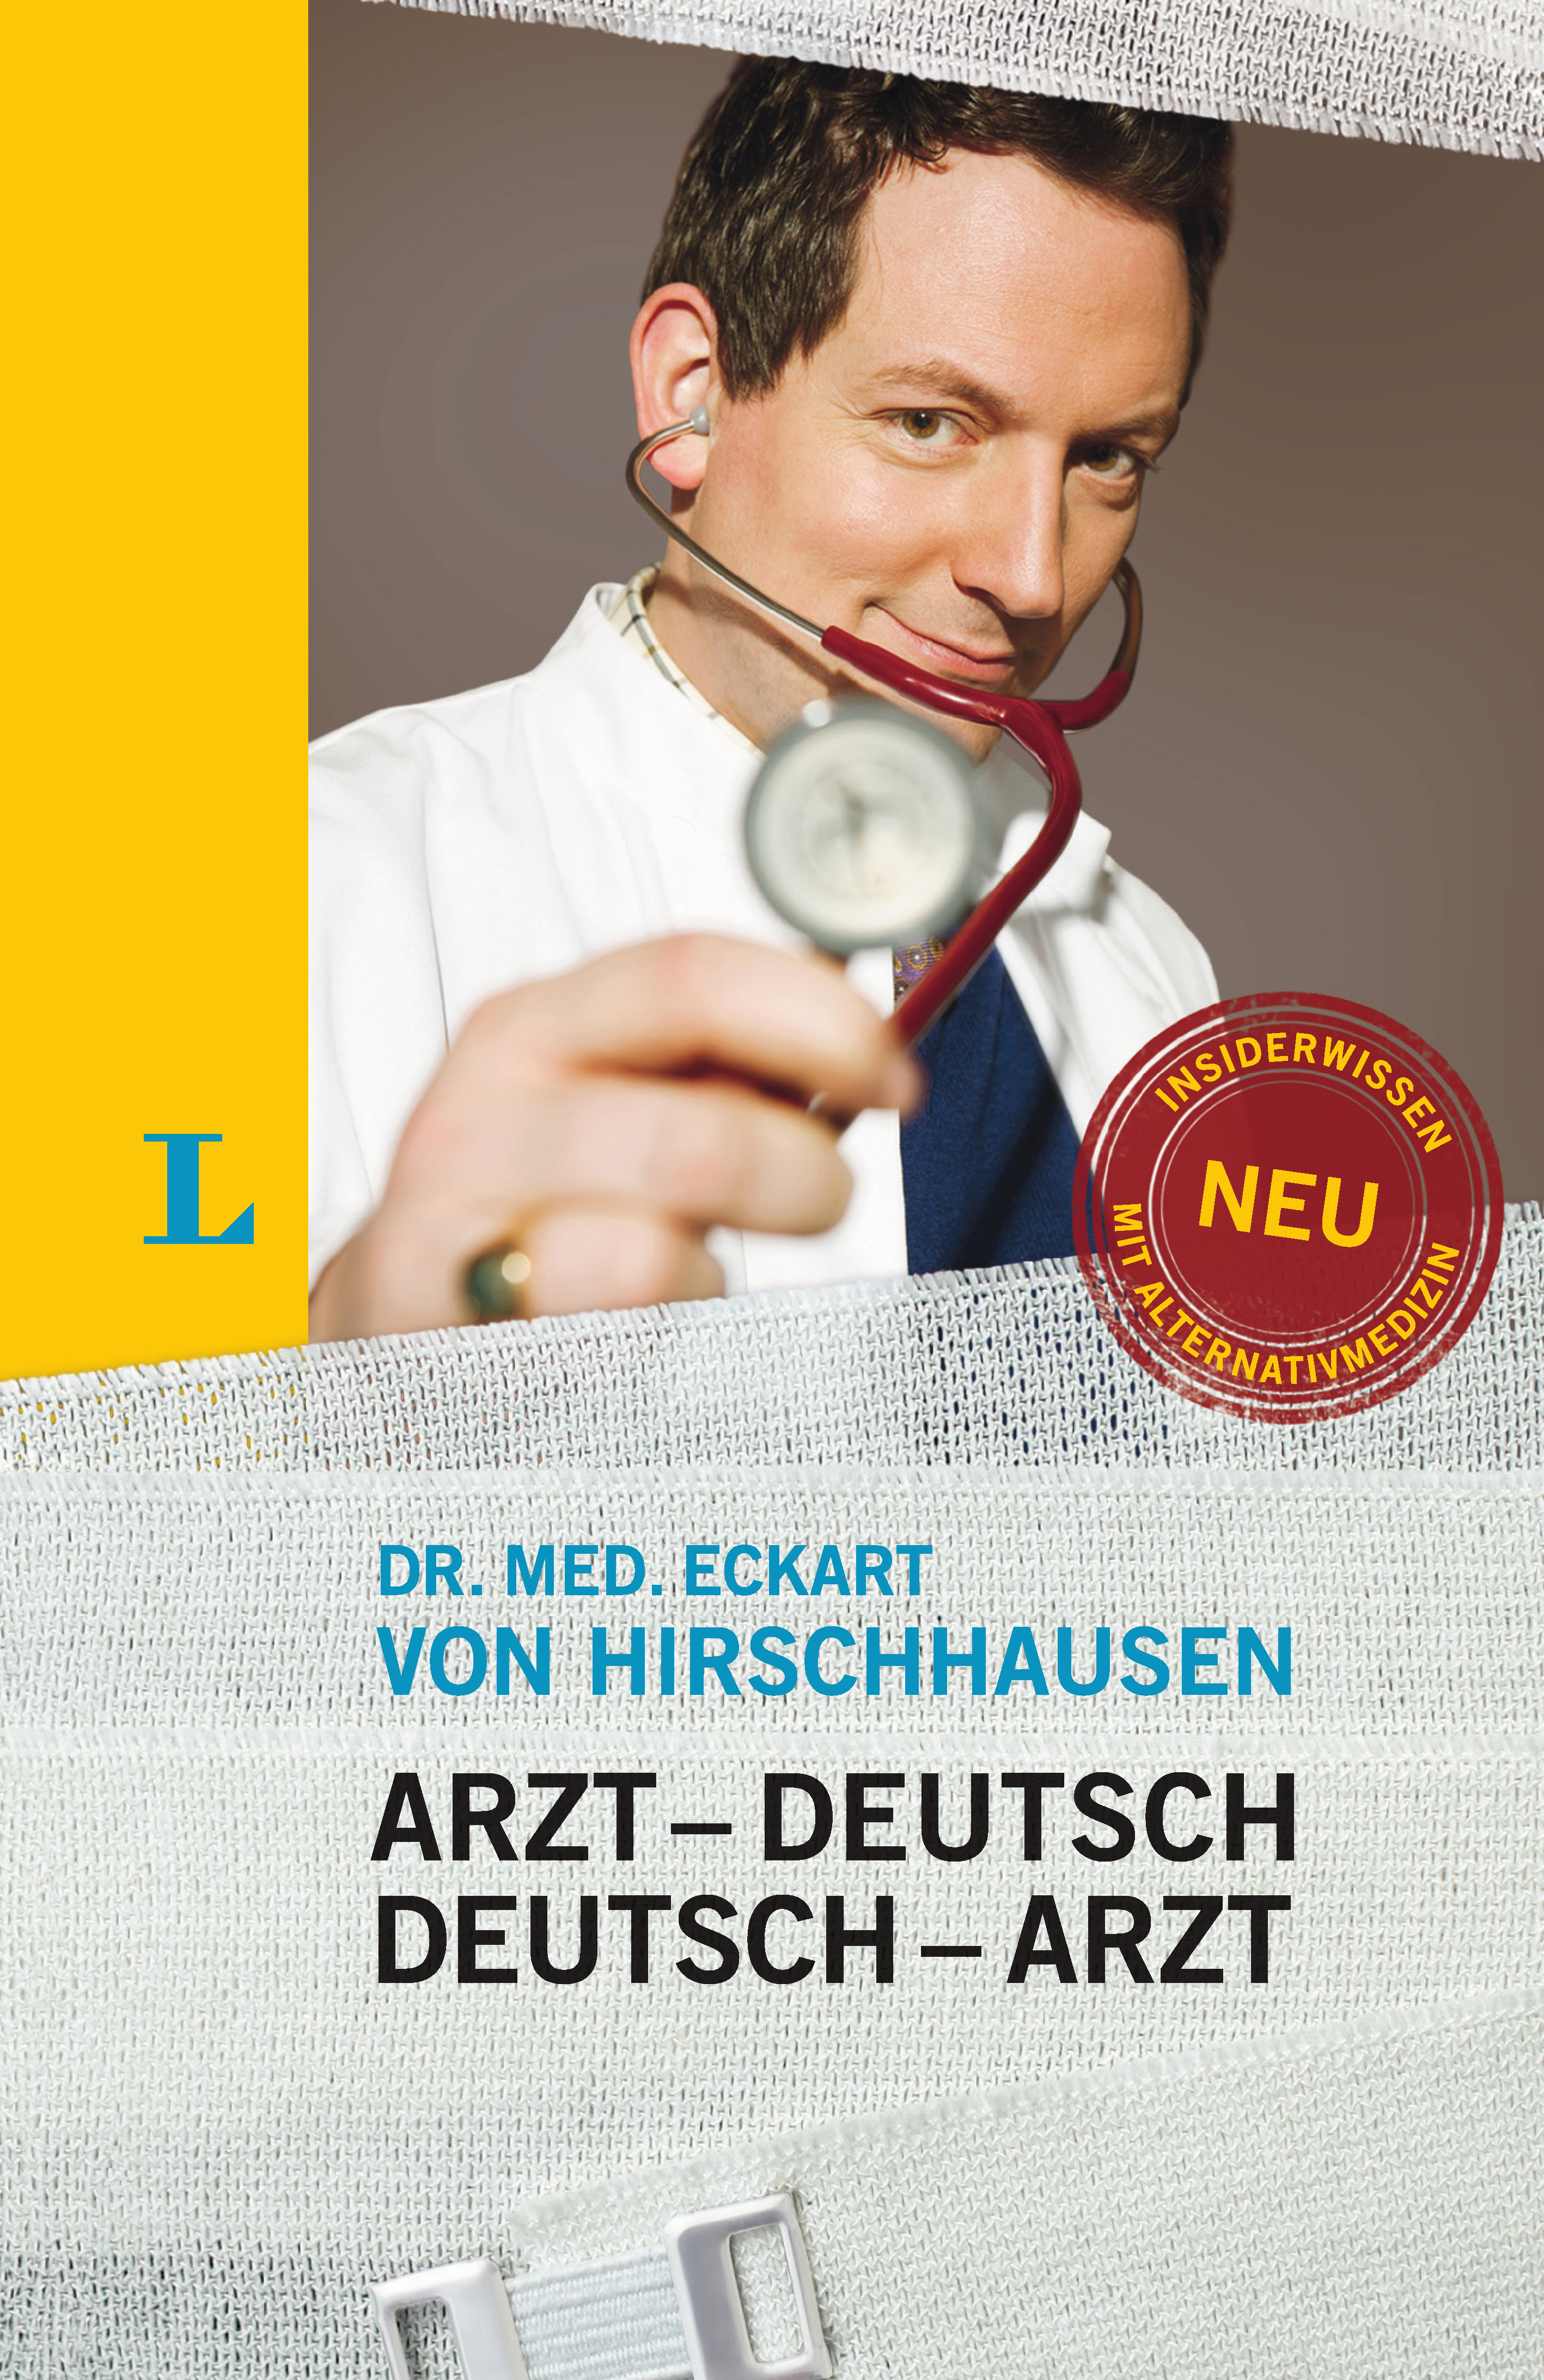 Langenscheidt Arzt-Deutsch/Deutsch-Arzt